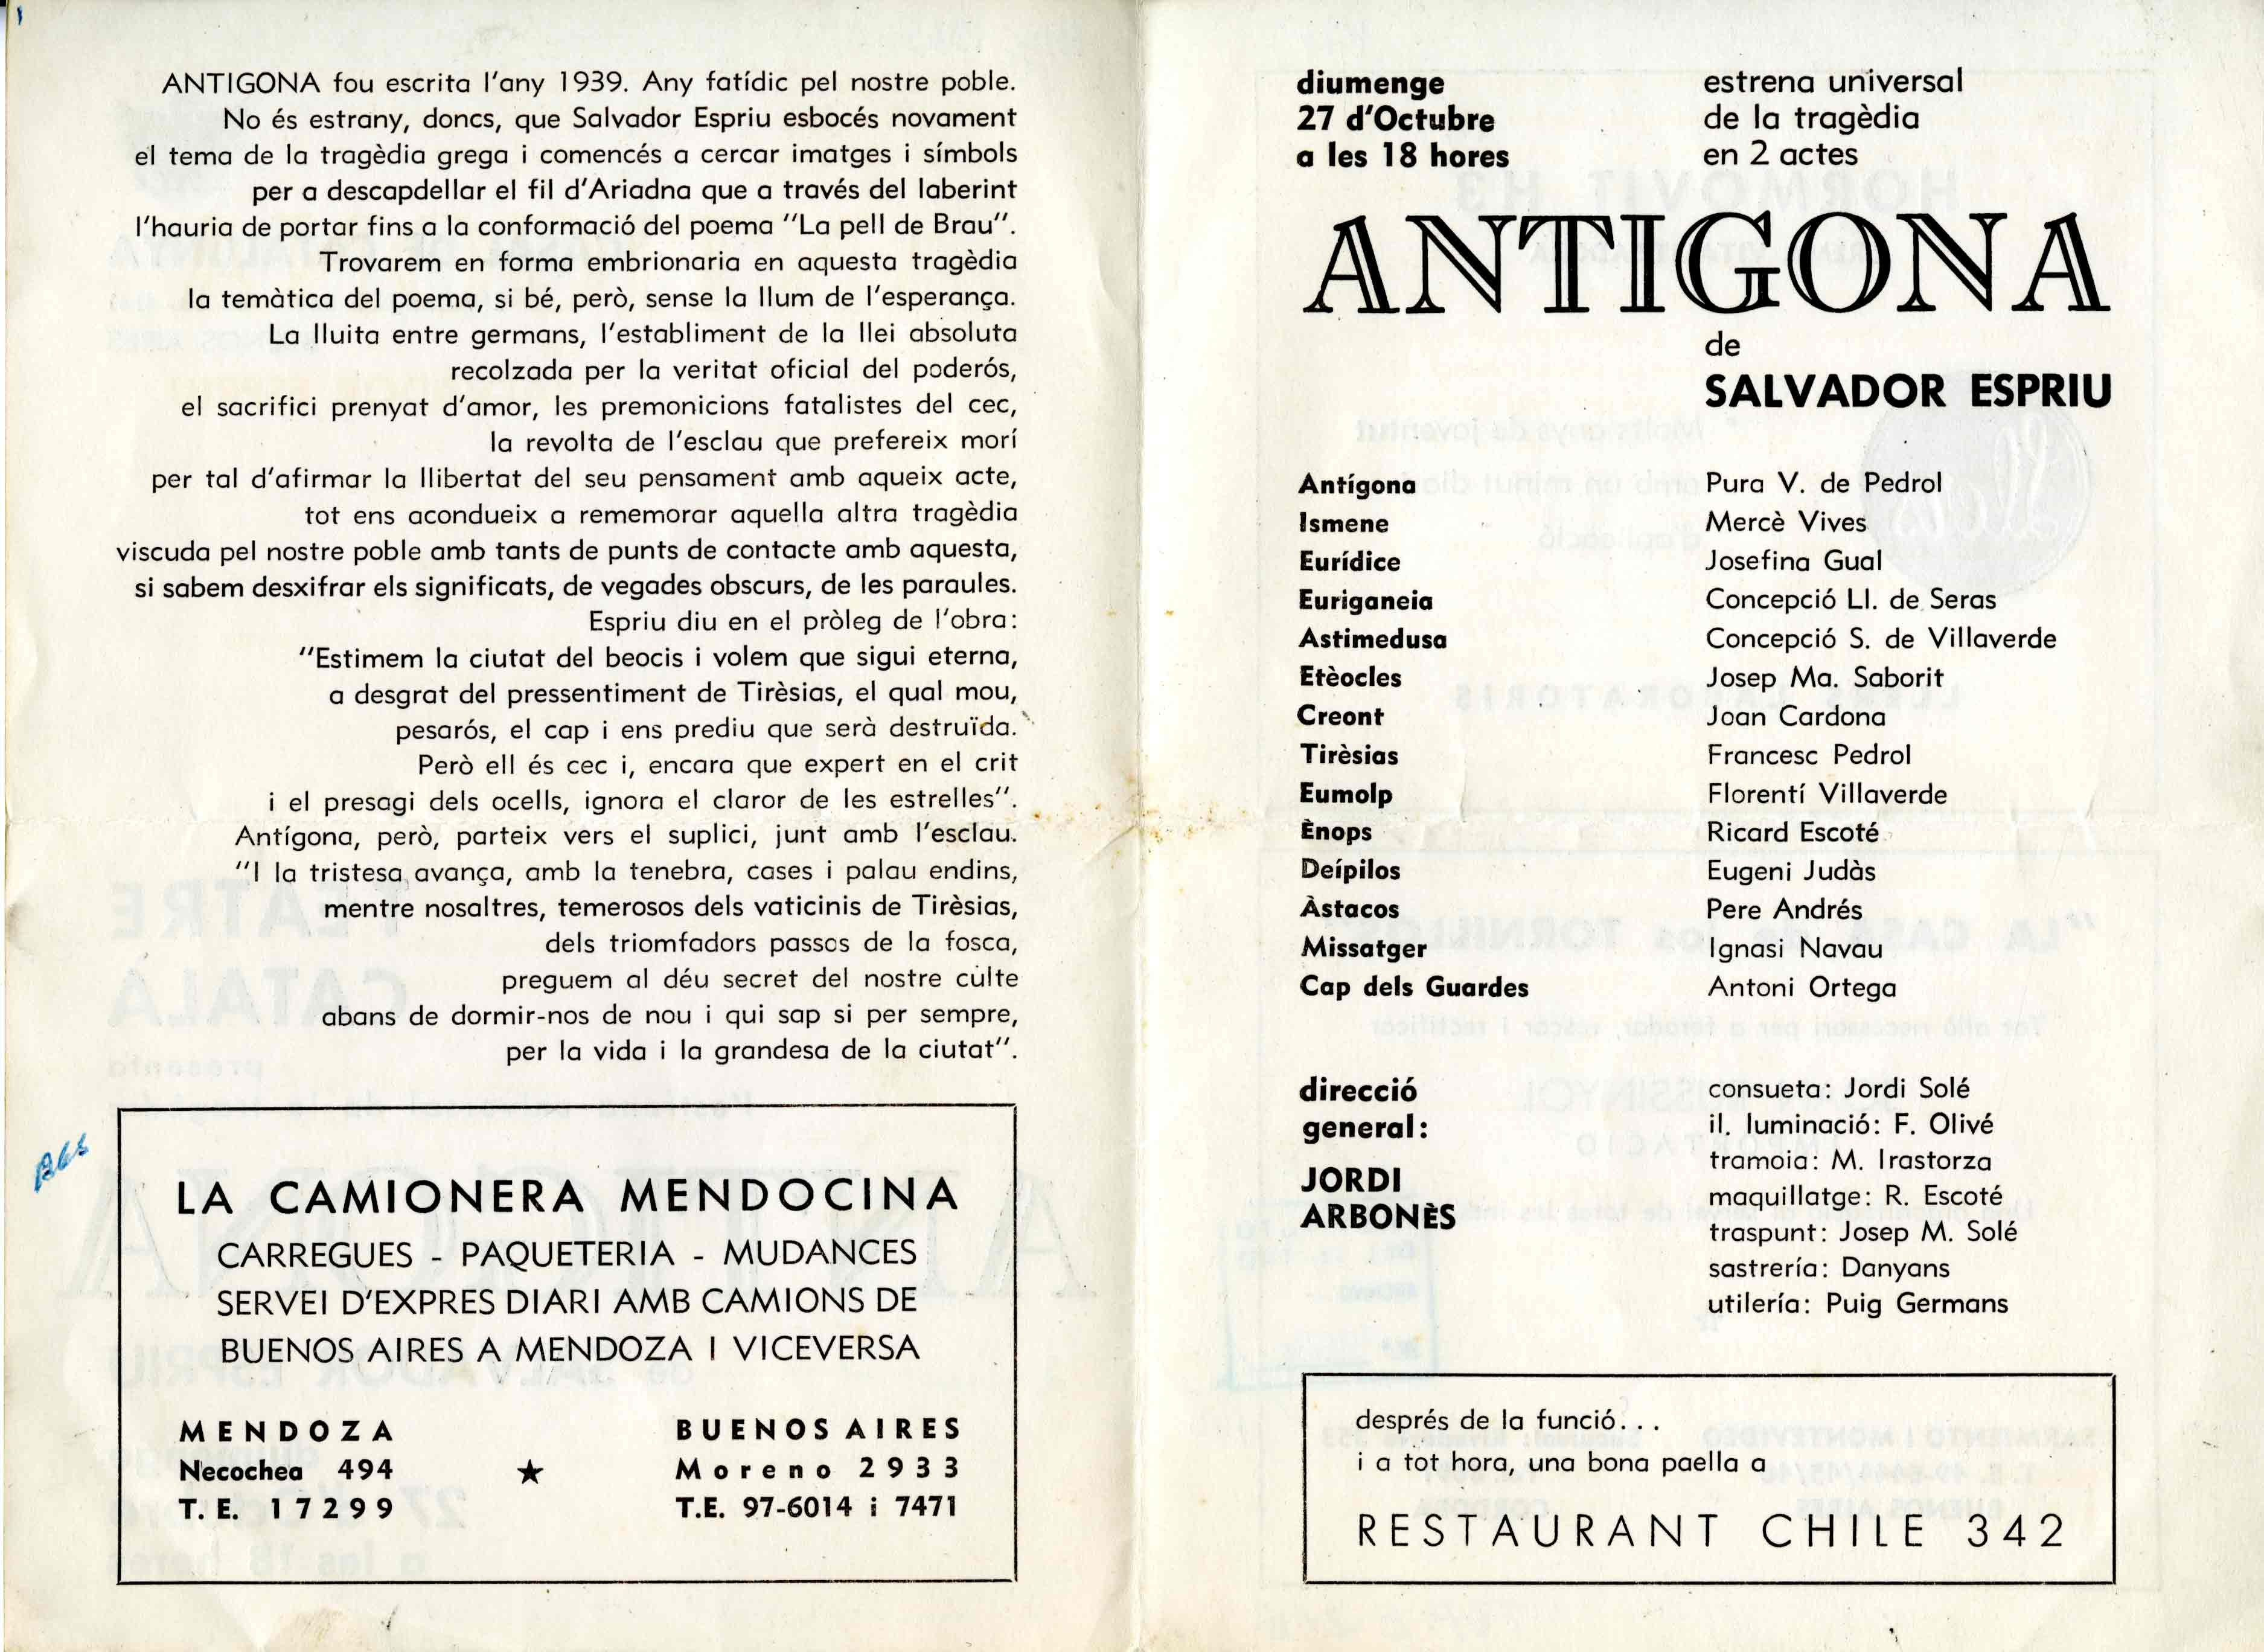 Programa. Antigona. Casal de Catalunya (Buenos Aires). 1963